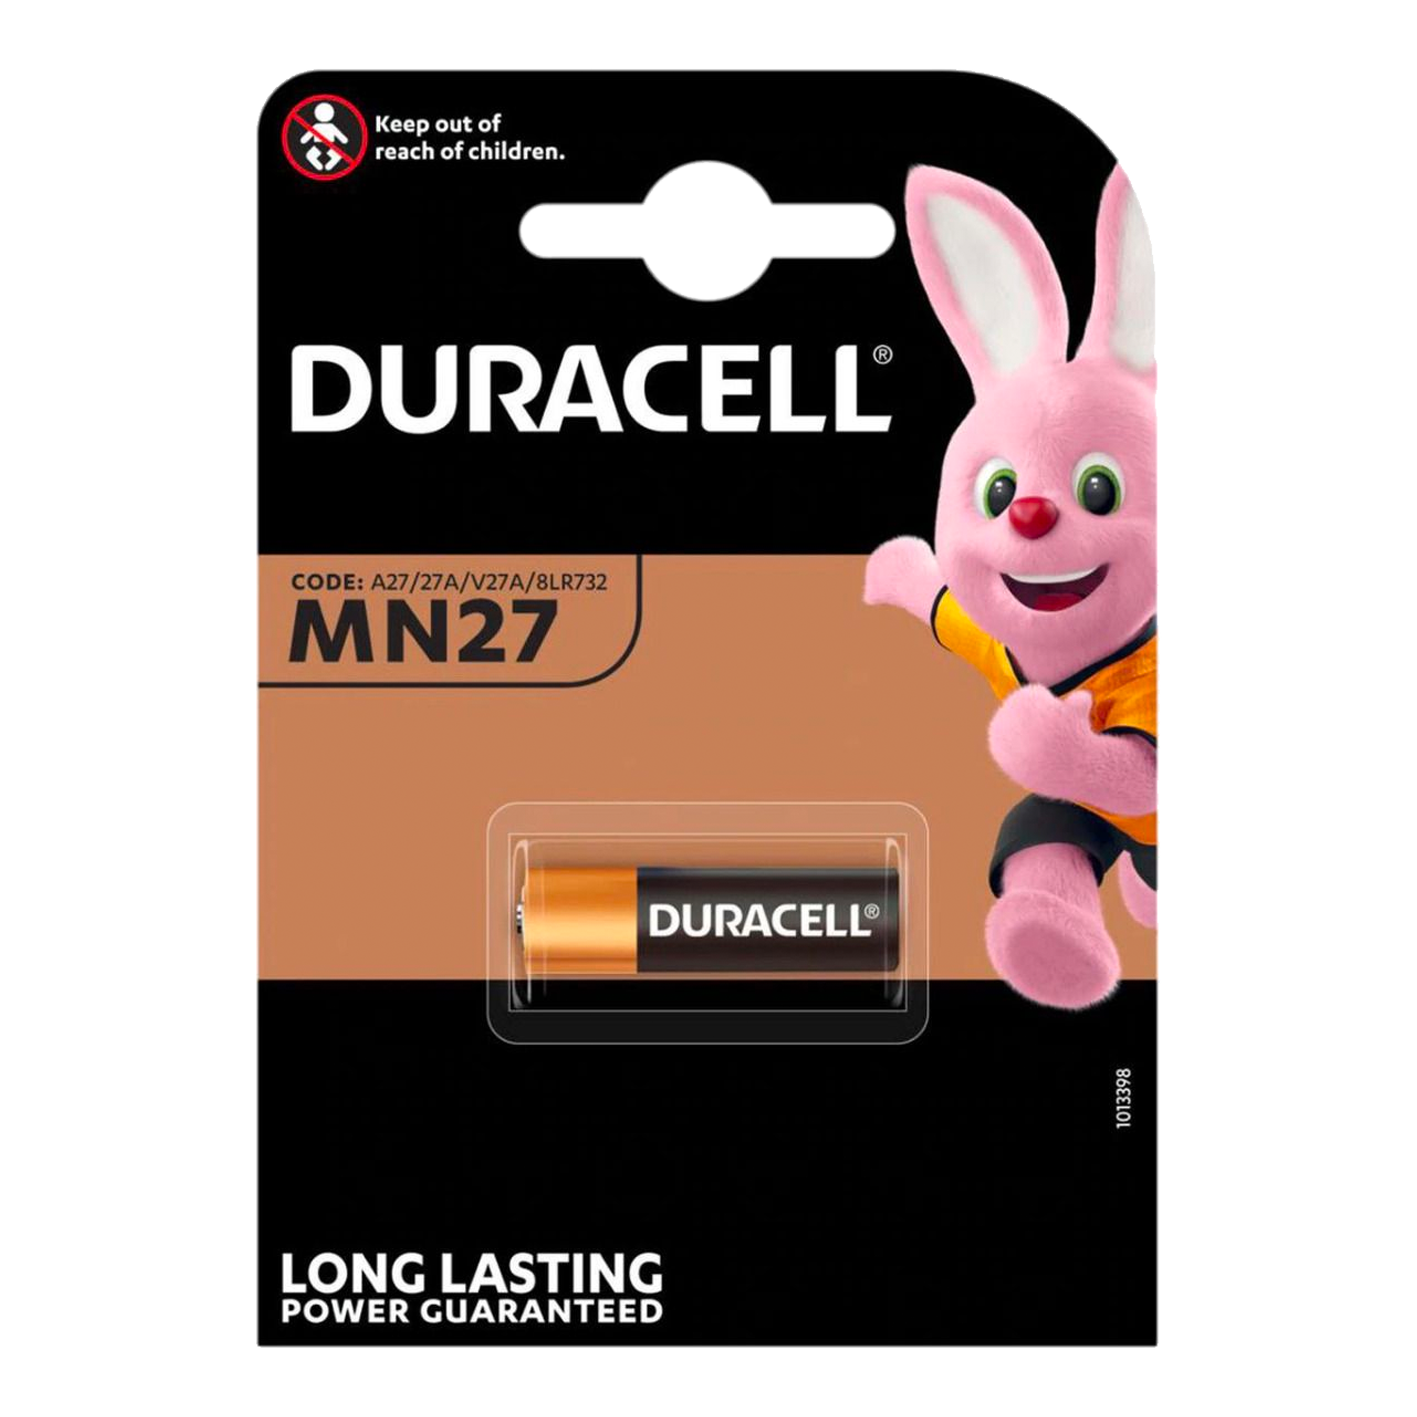 Duracell MN27/27A 12 V alcalino, paquete de 1